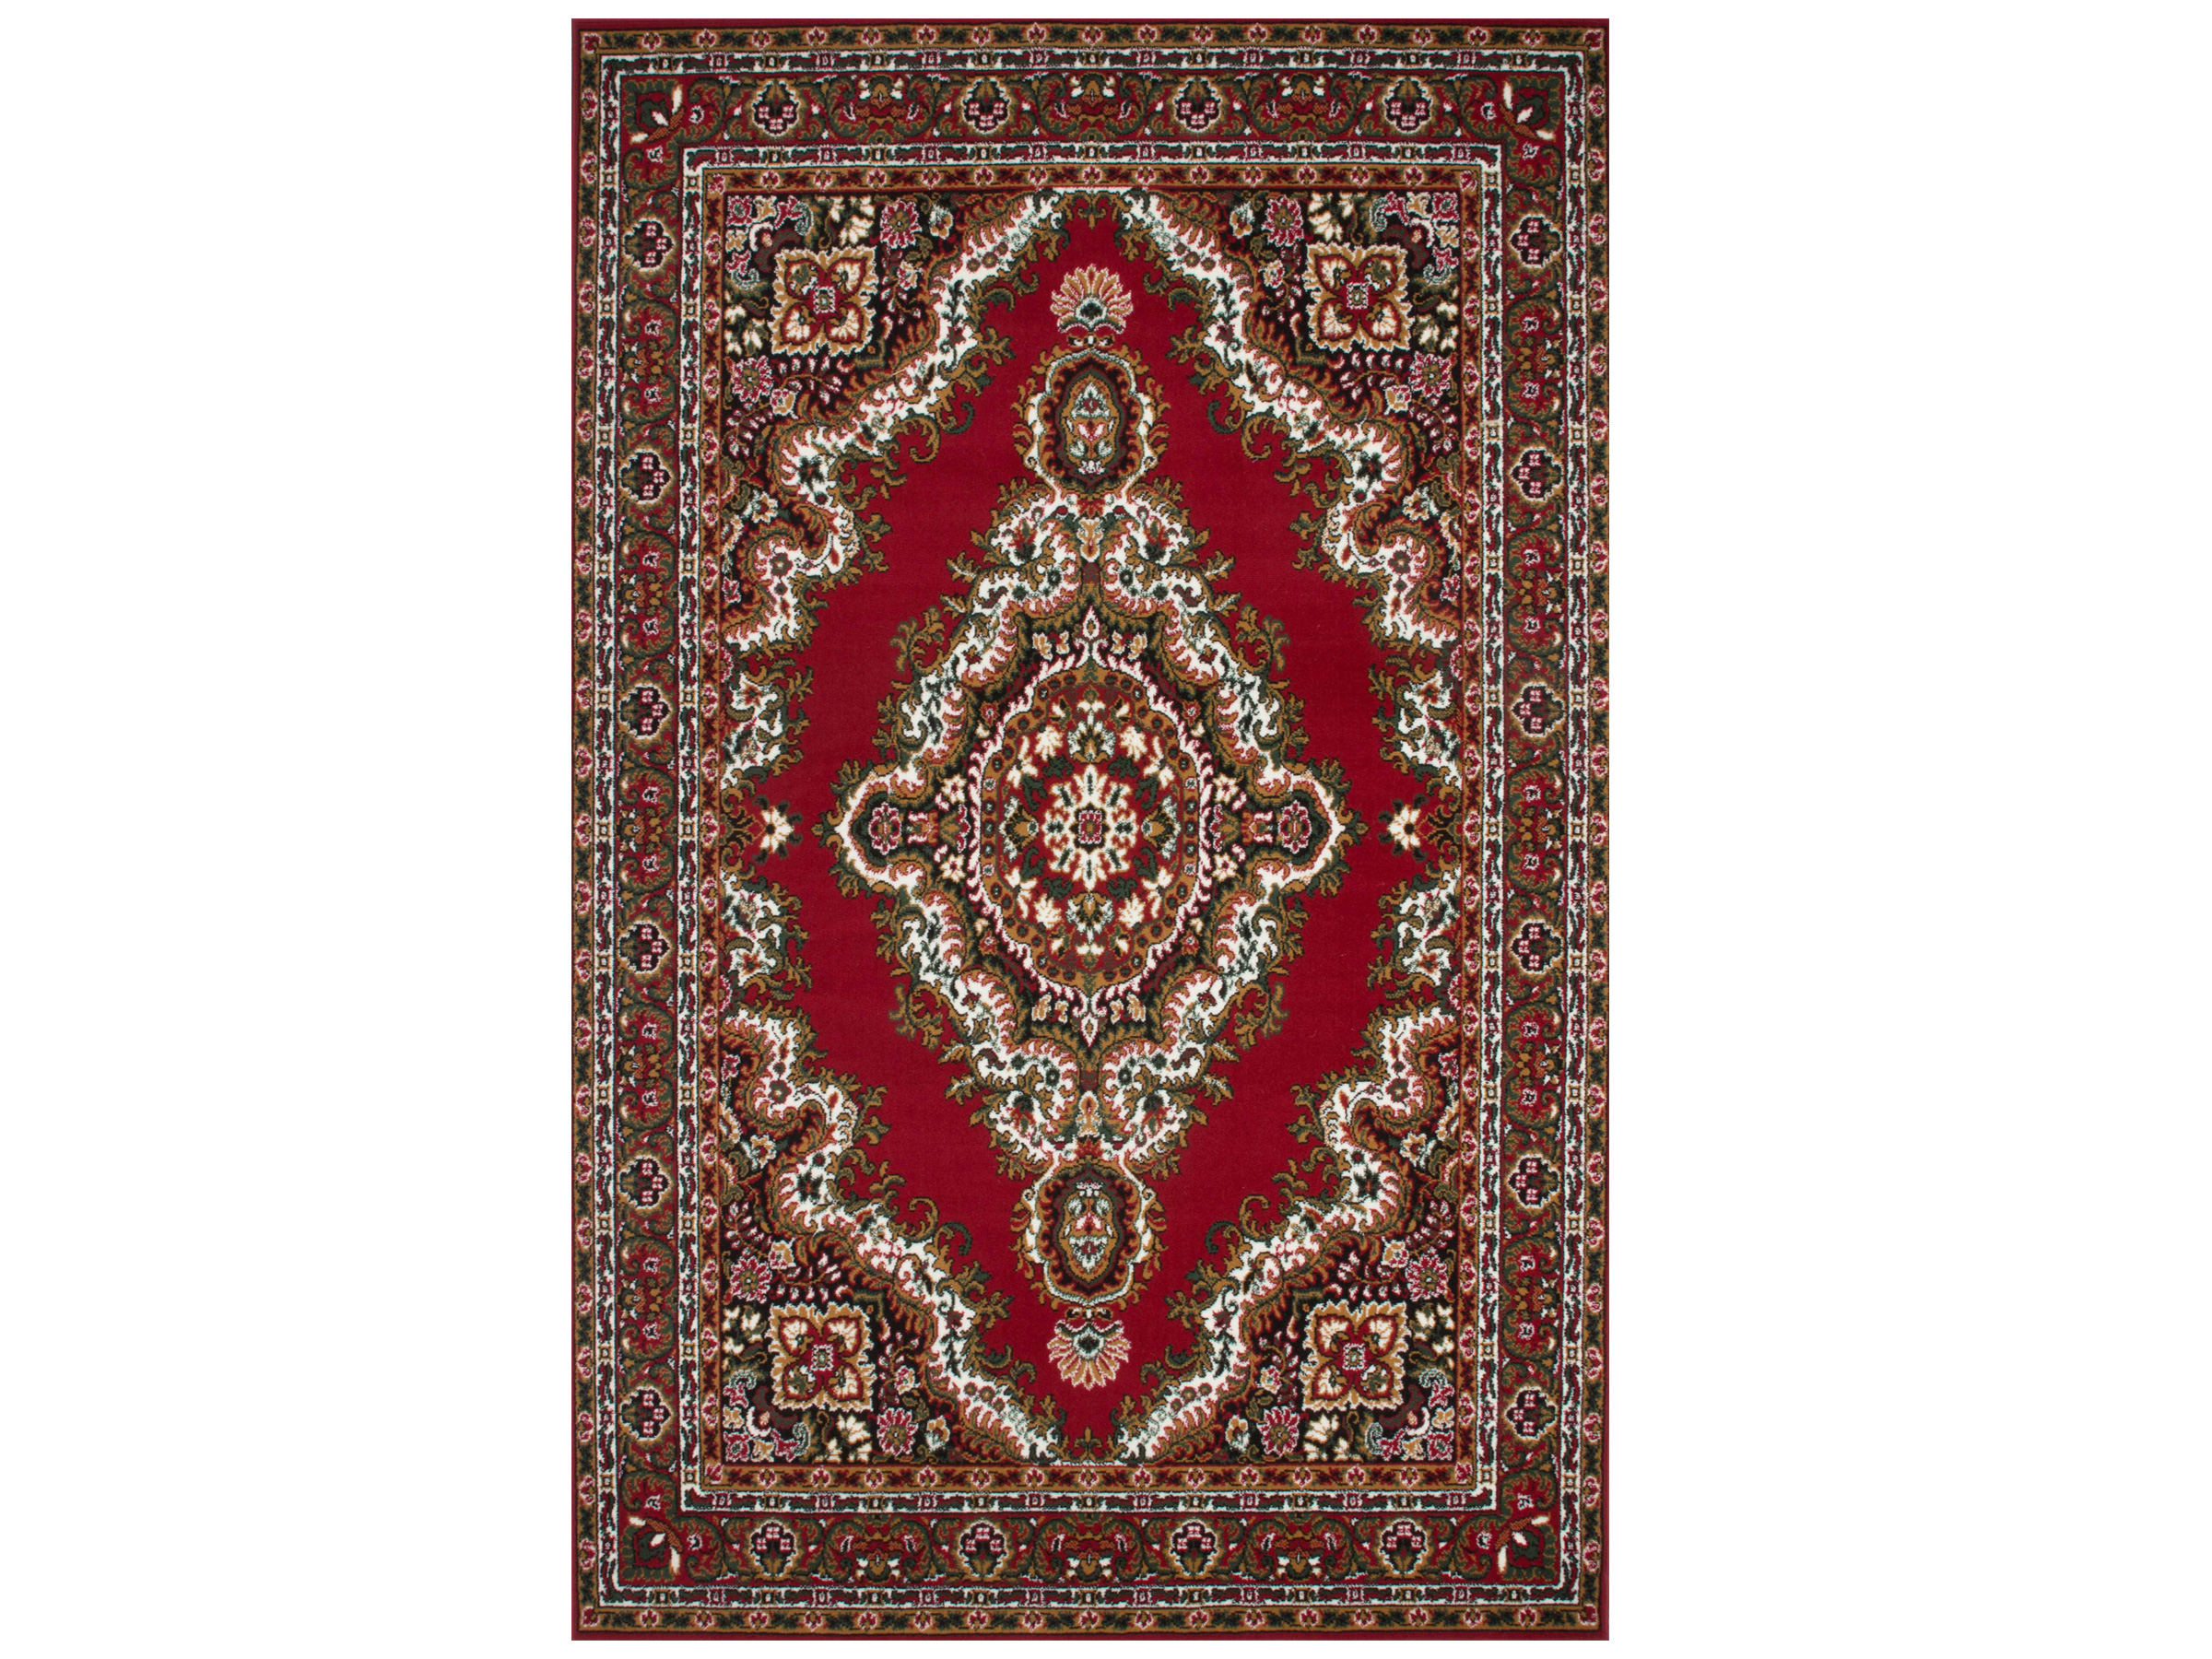 bende Geest boiler Perzisch tapijt kopen | Jouw Perzische vloerkleed vertrouwd bestellen